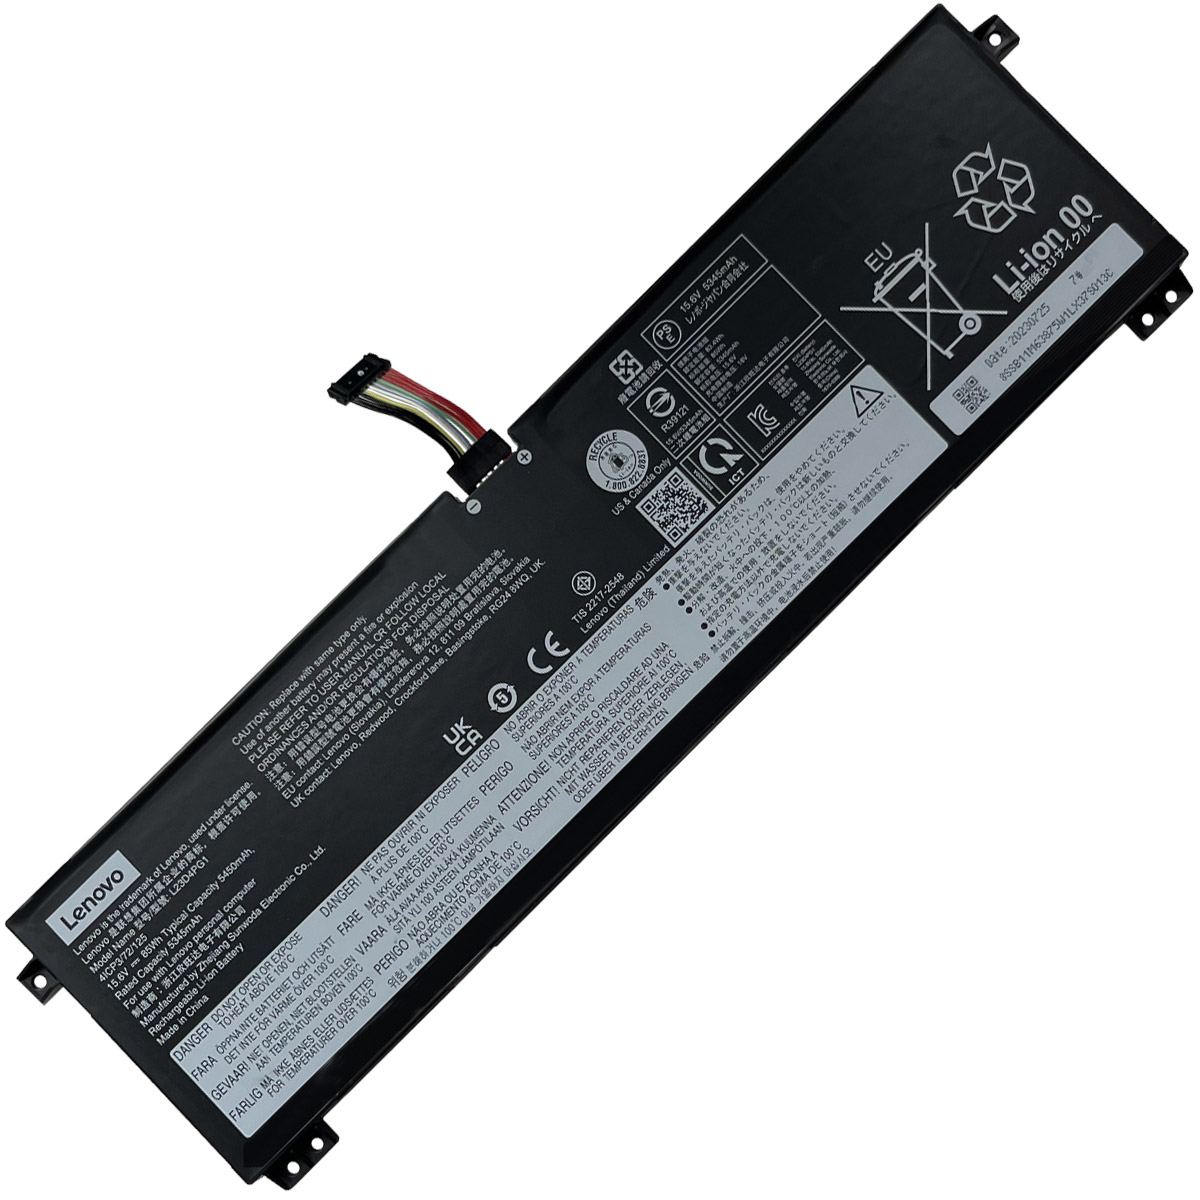 LENOVO-L23M4PG1/L23D4PG1-Laptop Replacement Battery